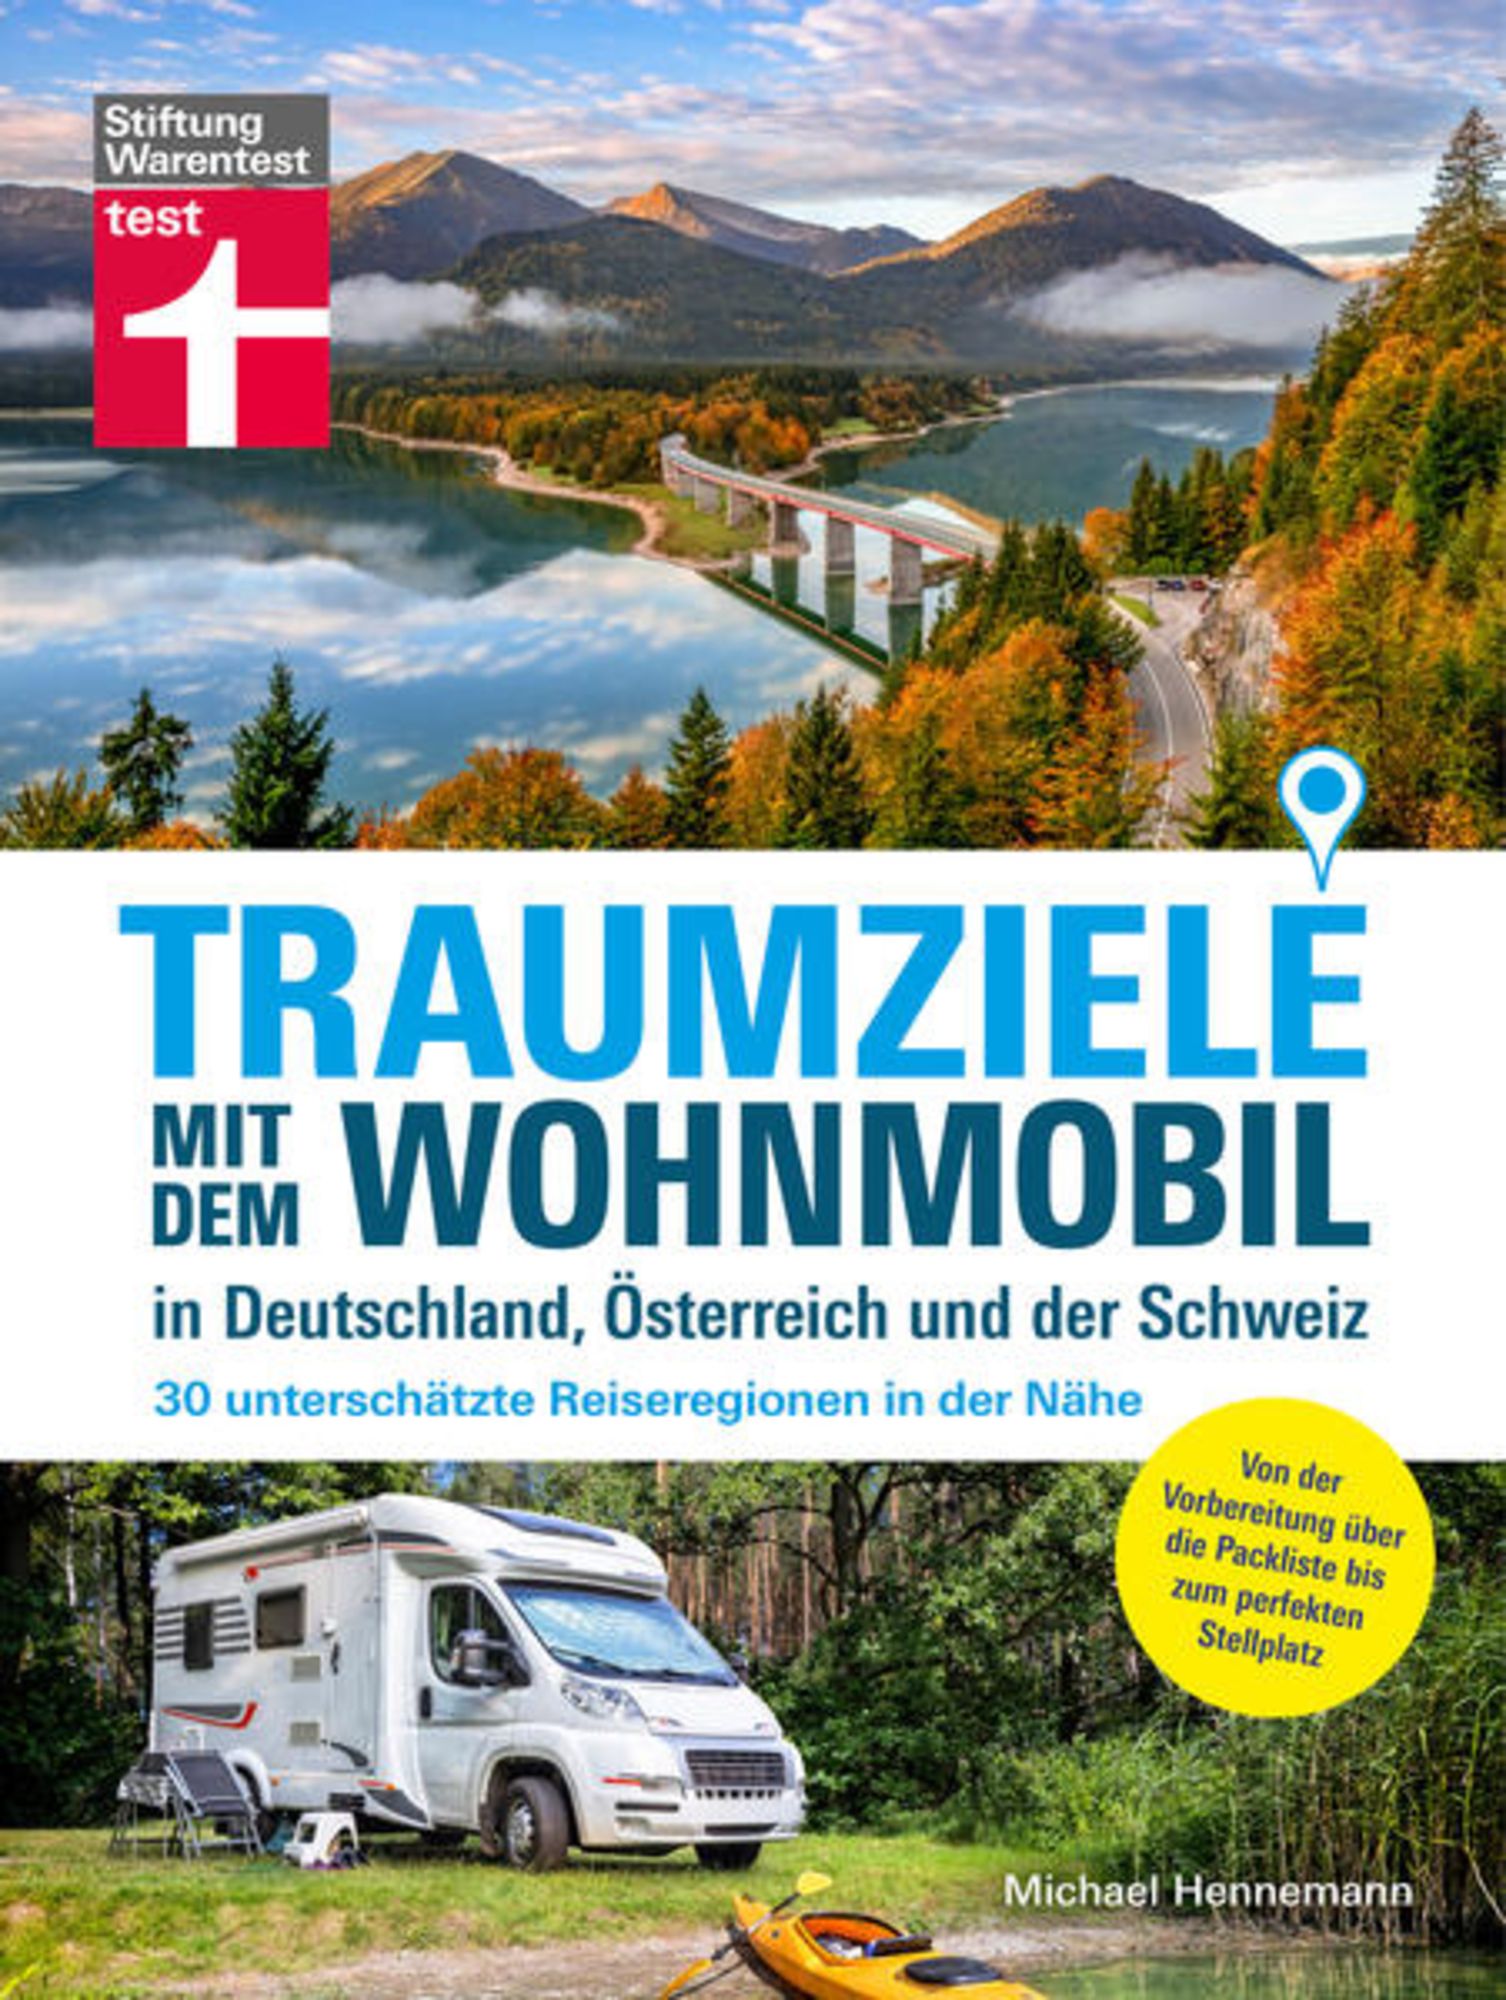 Traumziele mit dem Wohnmobil in Deutschland, Österreich und der